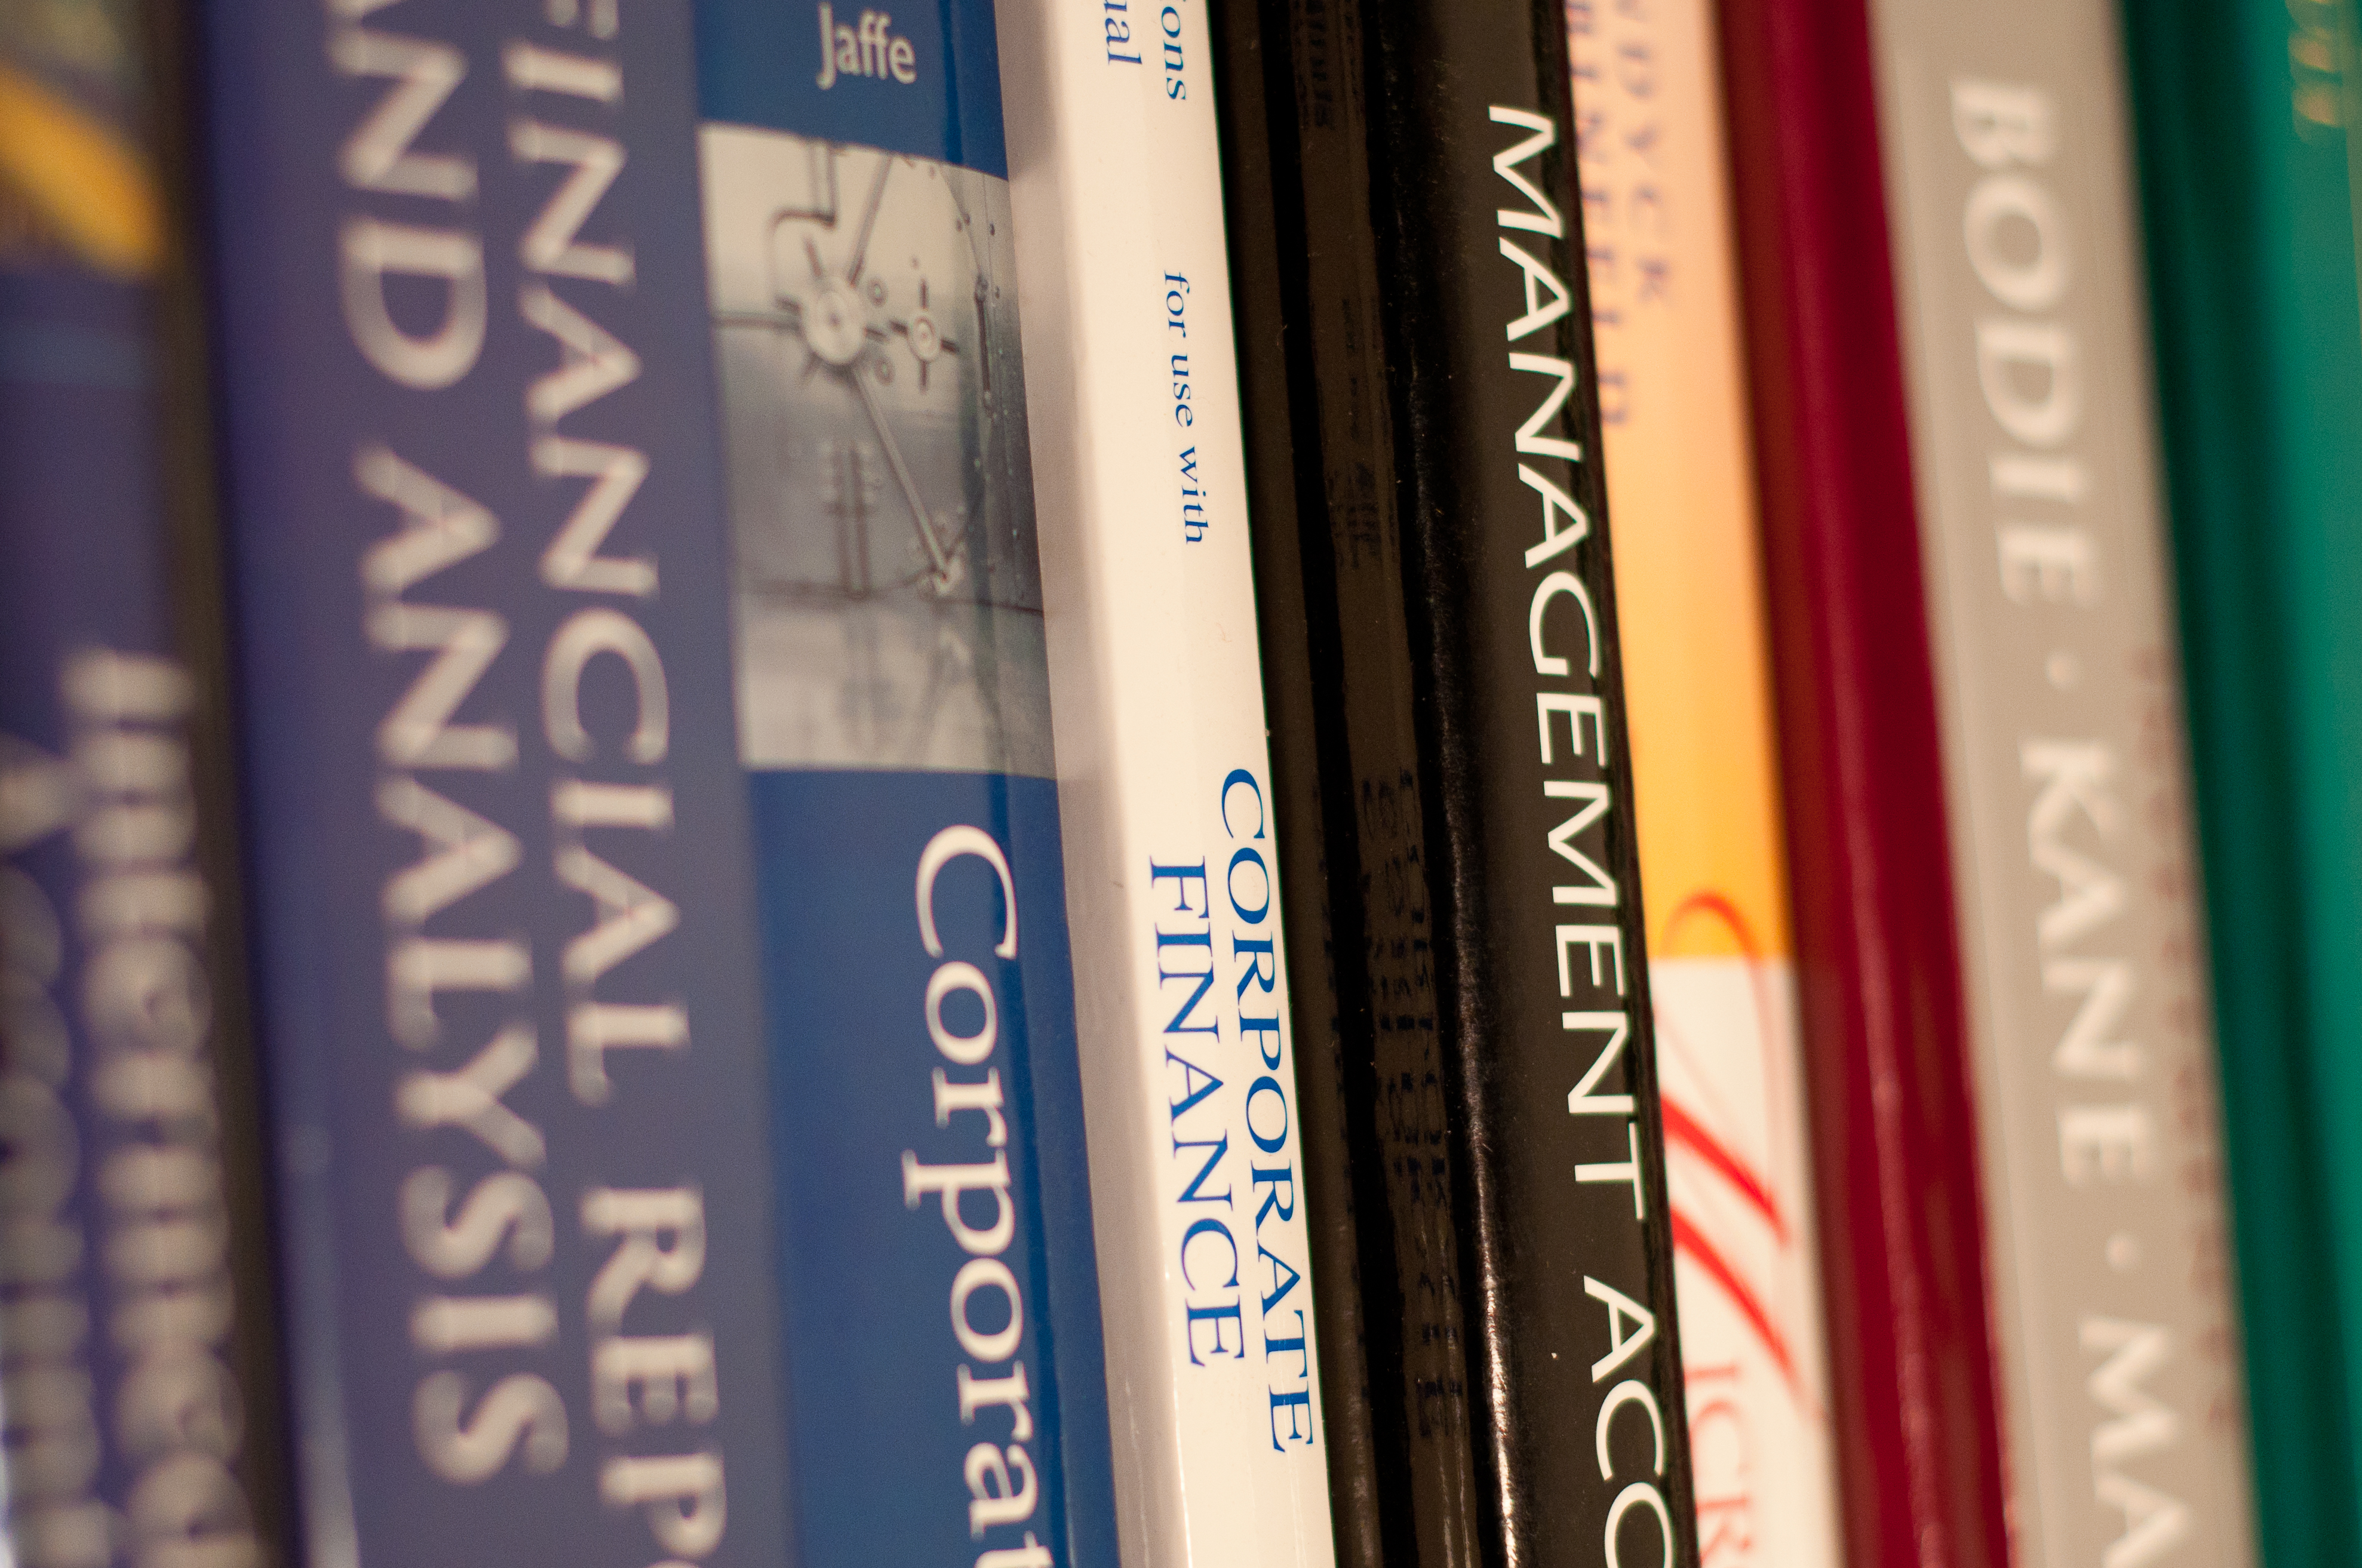 5 Alternative Ways to Find College Textbooks